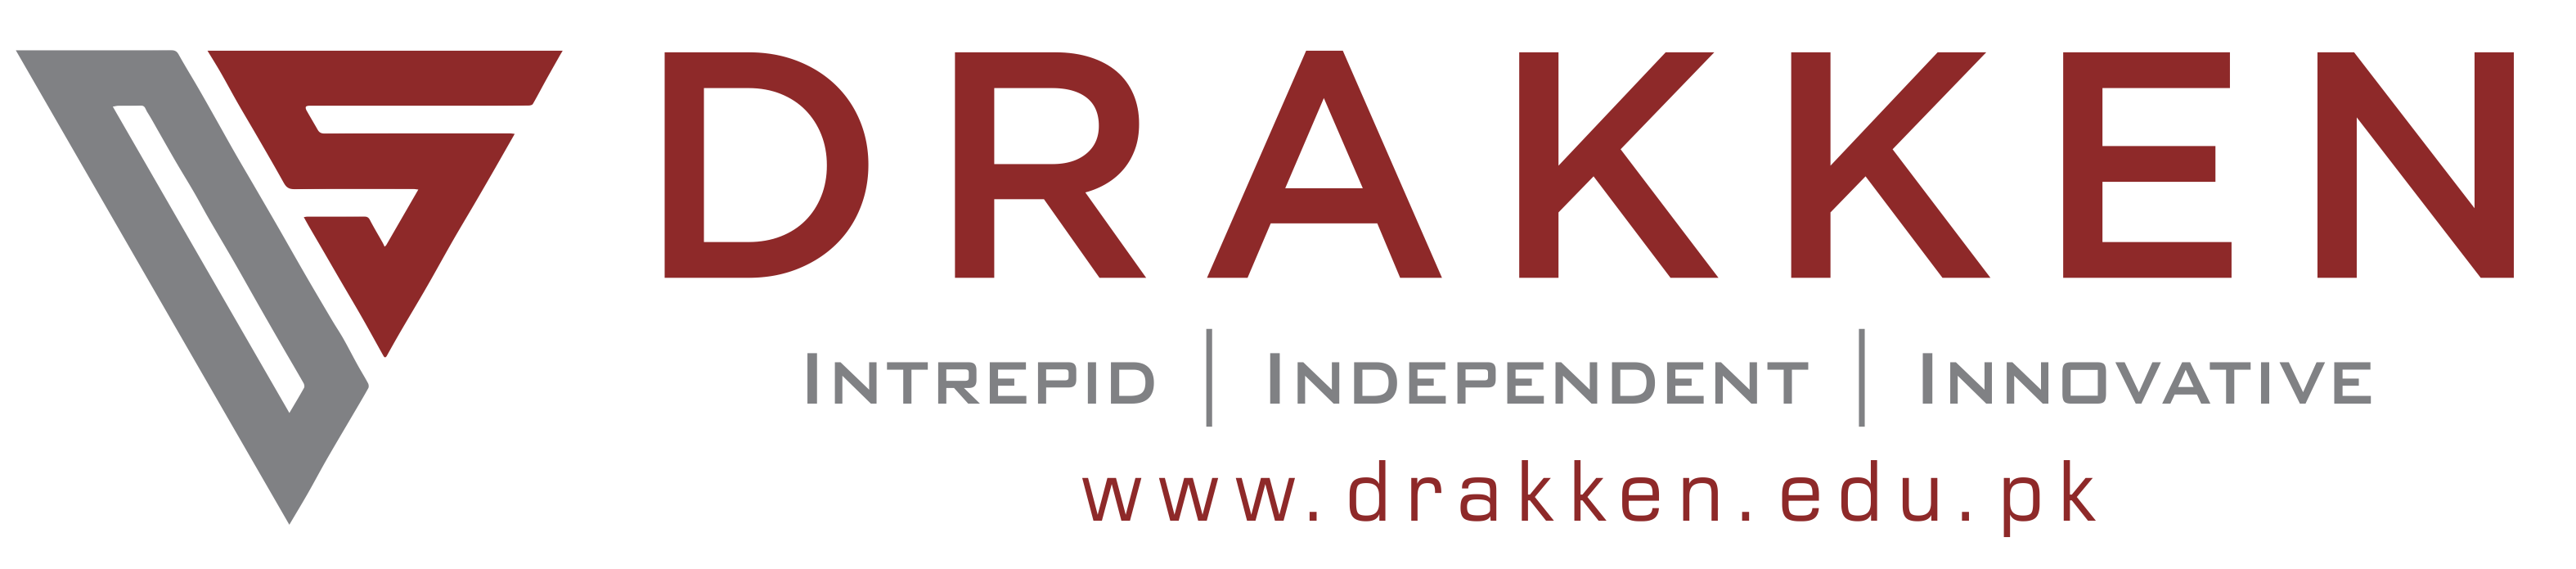 Logo for The Drakken School